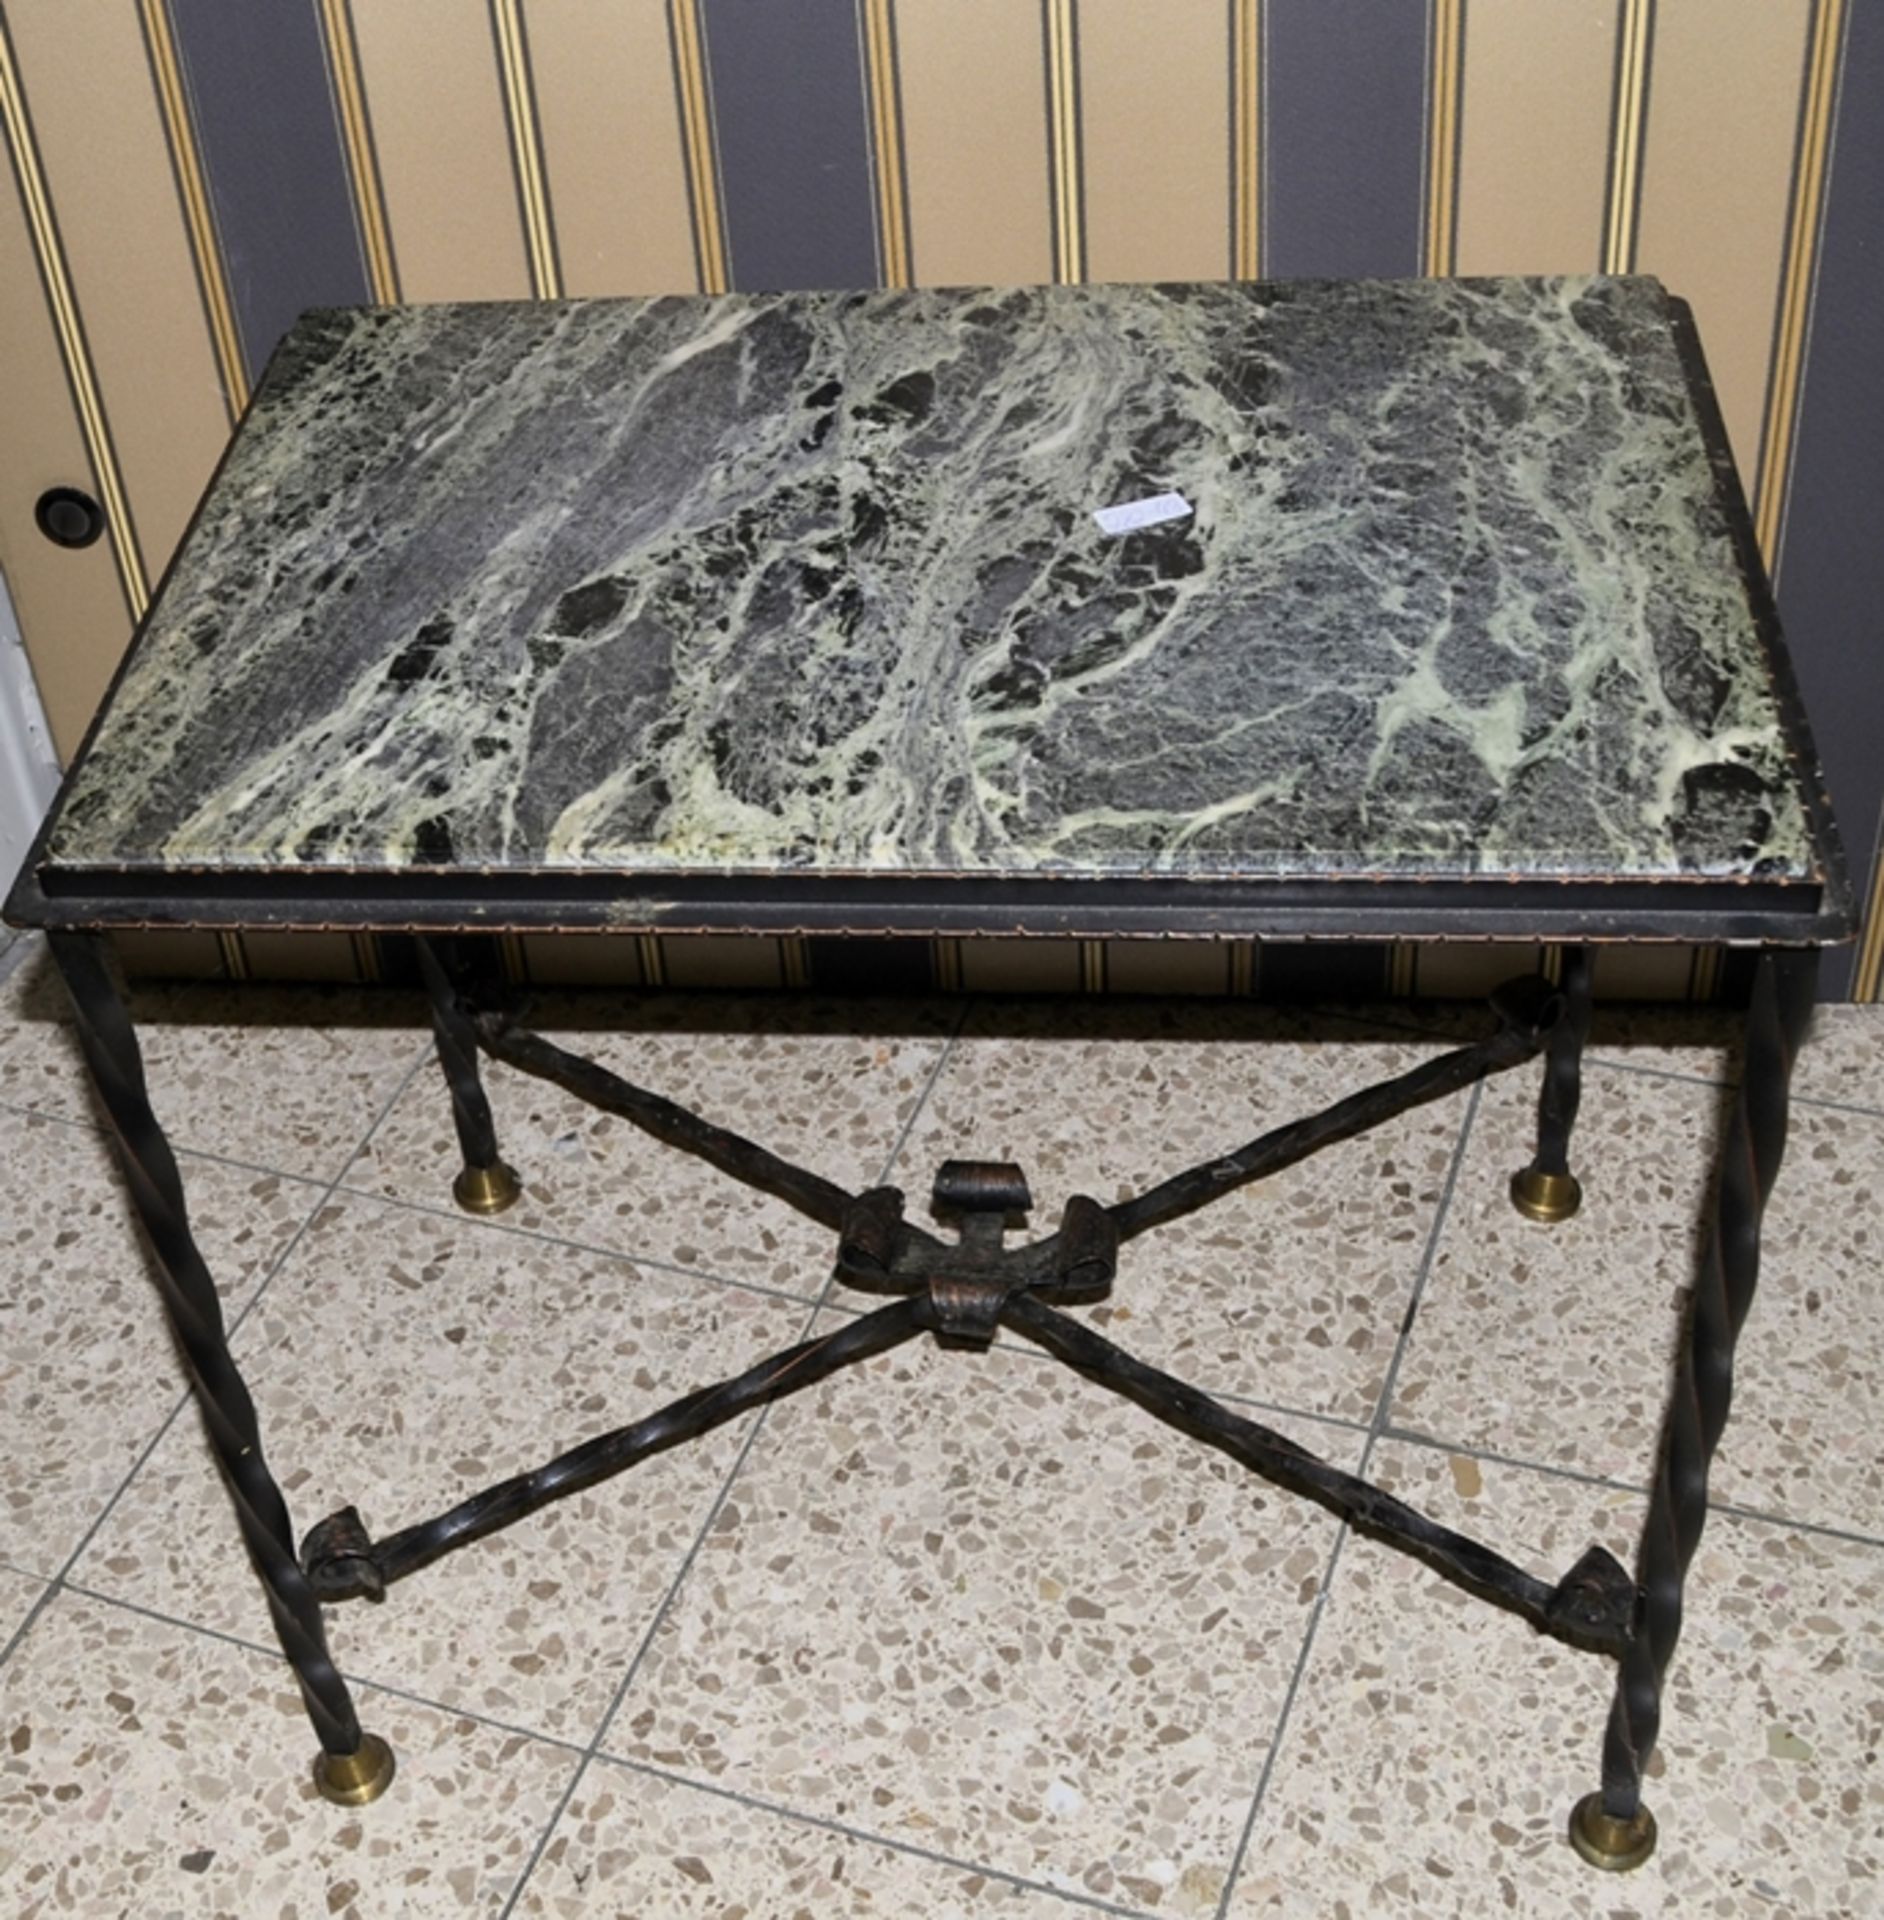 Gusseiserner Tisch mit Marmorplatte ca. 63 x 43 x 57 cm